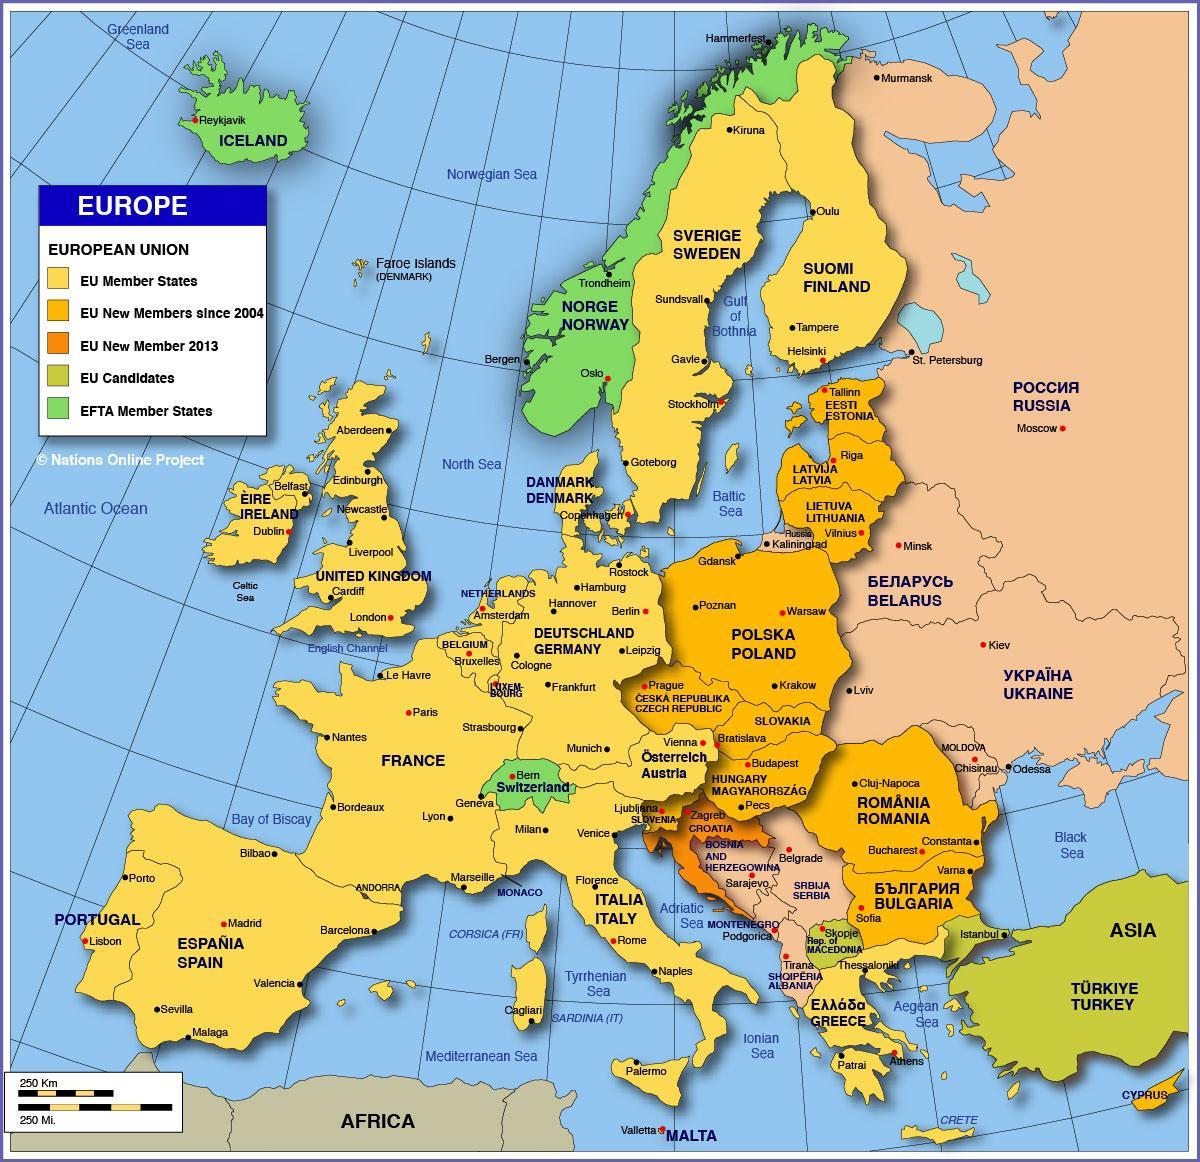 Moskva på kartan över europa